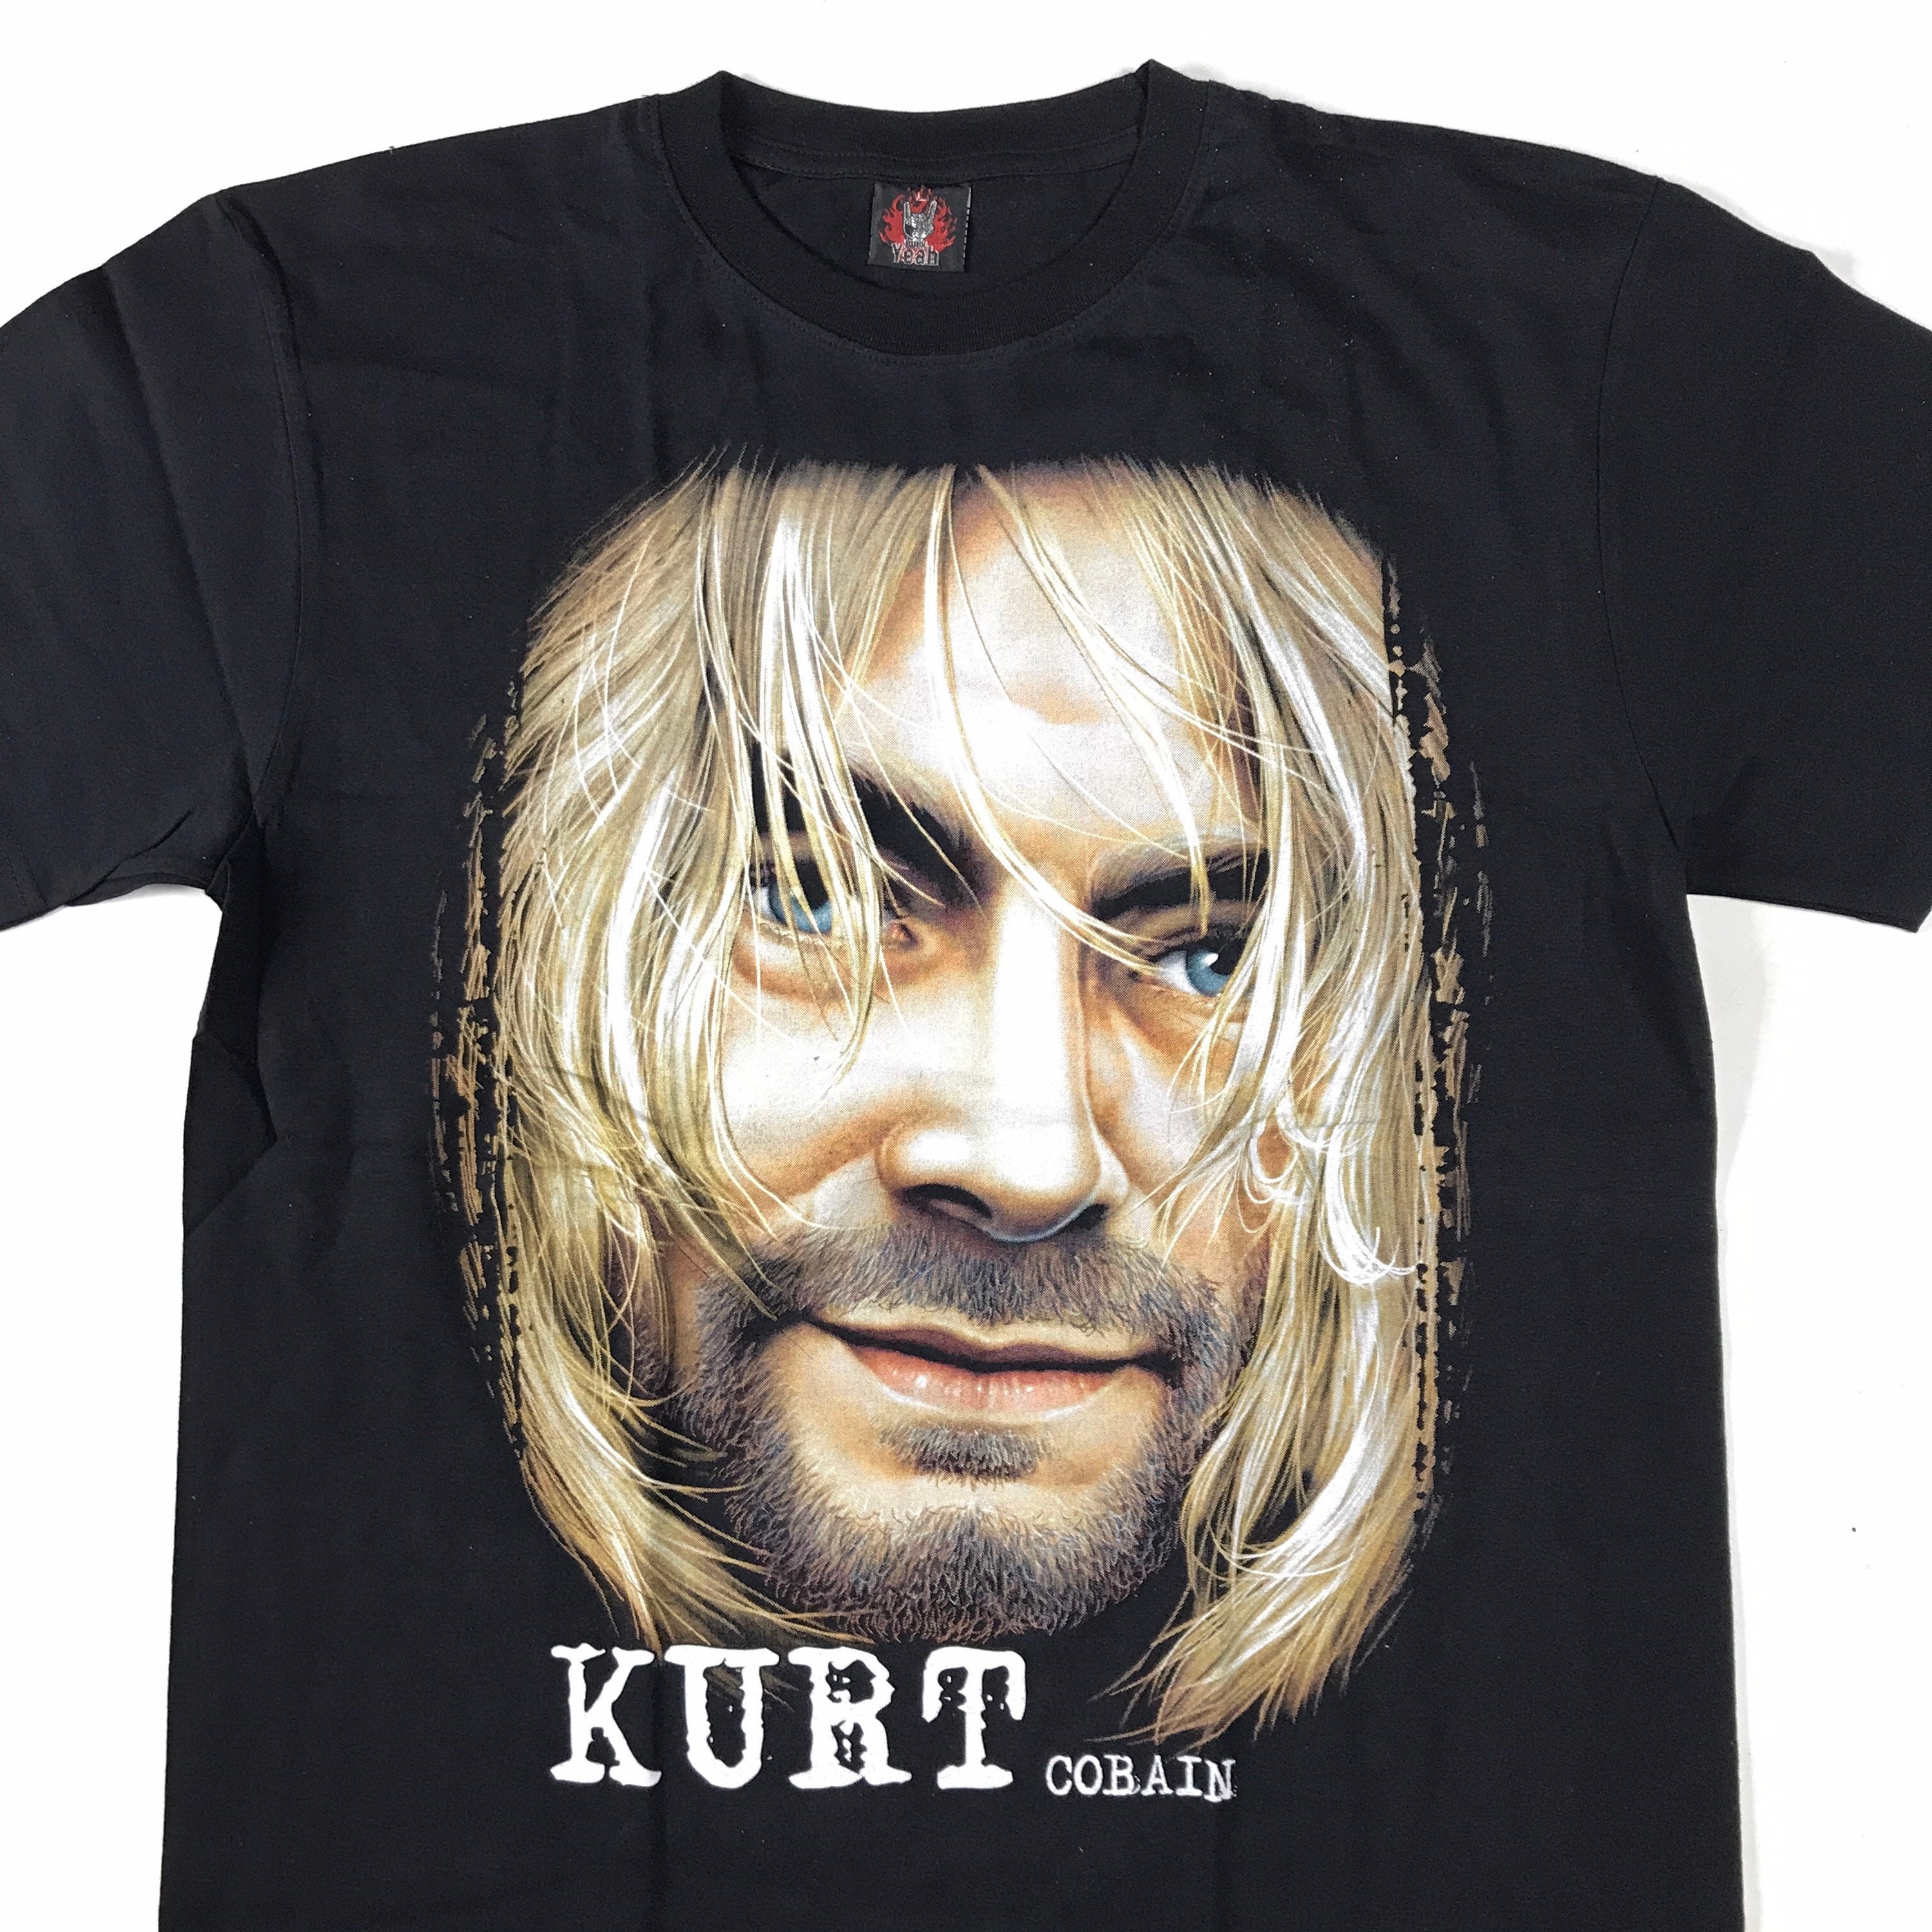 Kurt Cobain T shirt Sz Large 2000s | Etsy